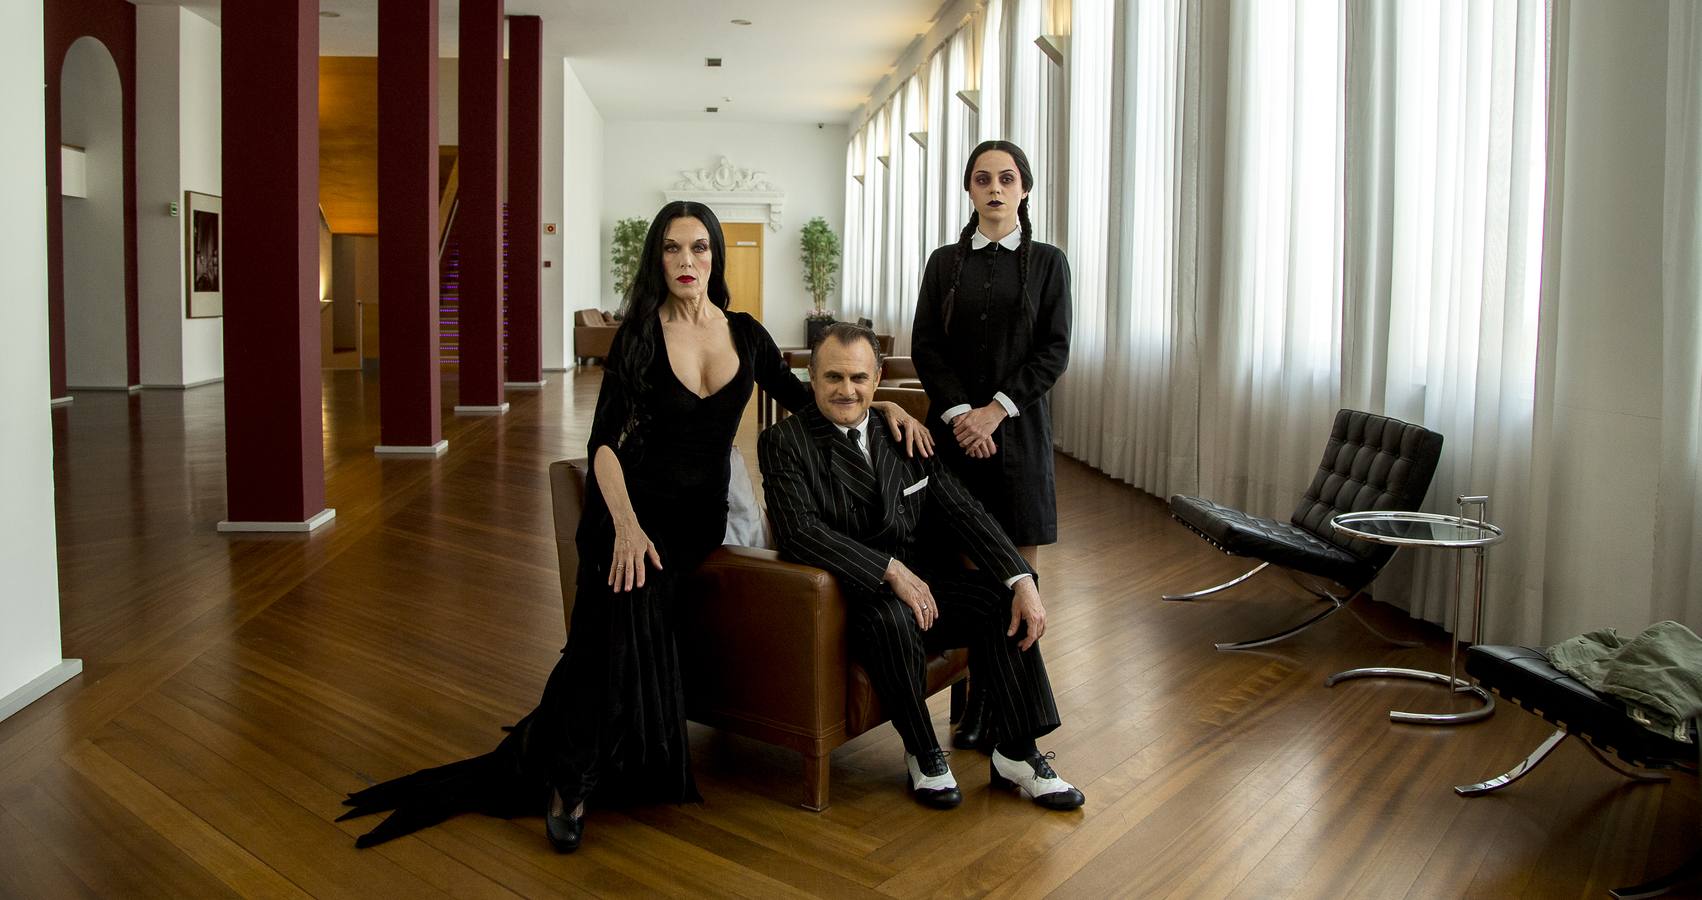 La comedia musical 'La familia Addams' llega al Teatro Calderón con siete funciones hasta el 3 de junio